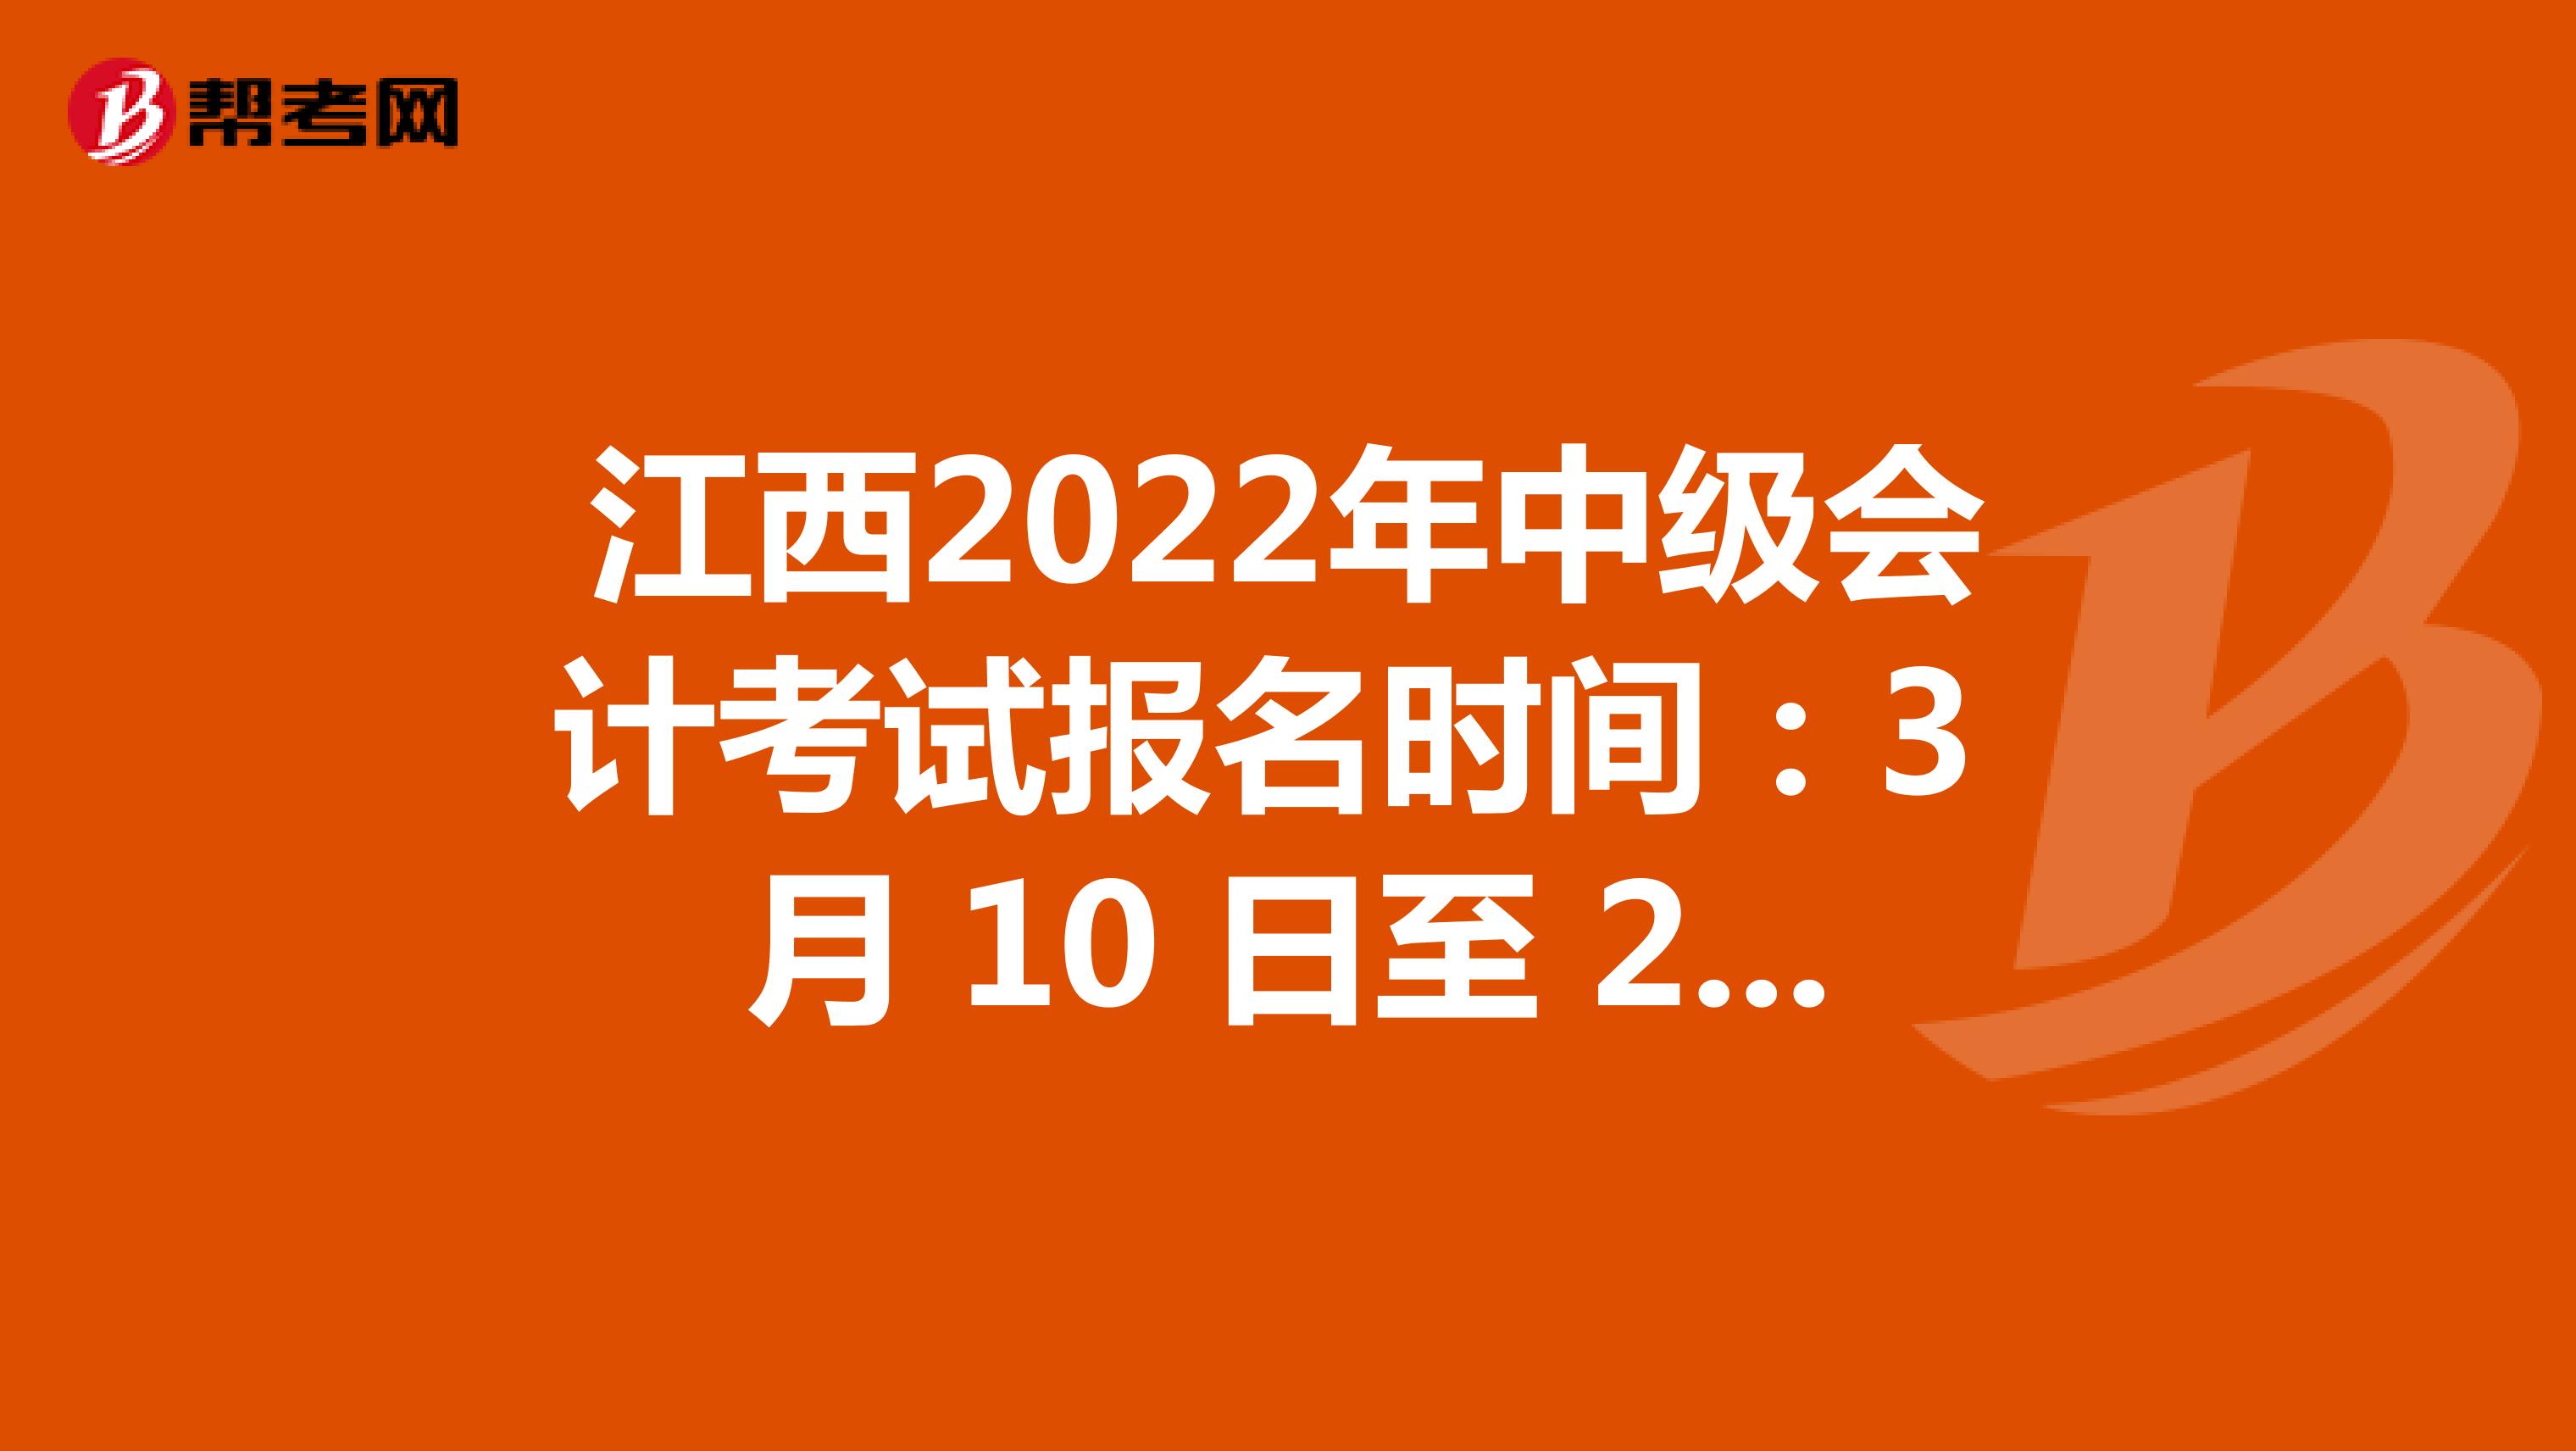 江西2022年中级会计考试报名时间：3 月 10 日至 28日